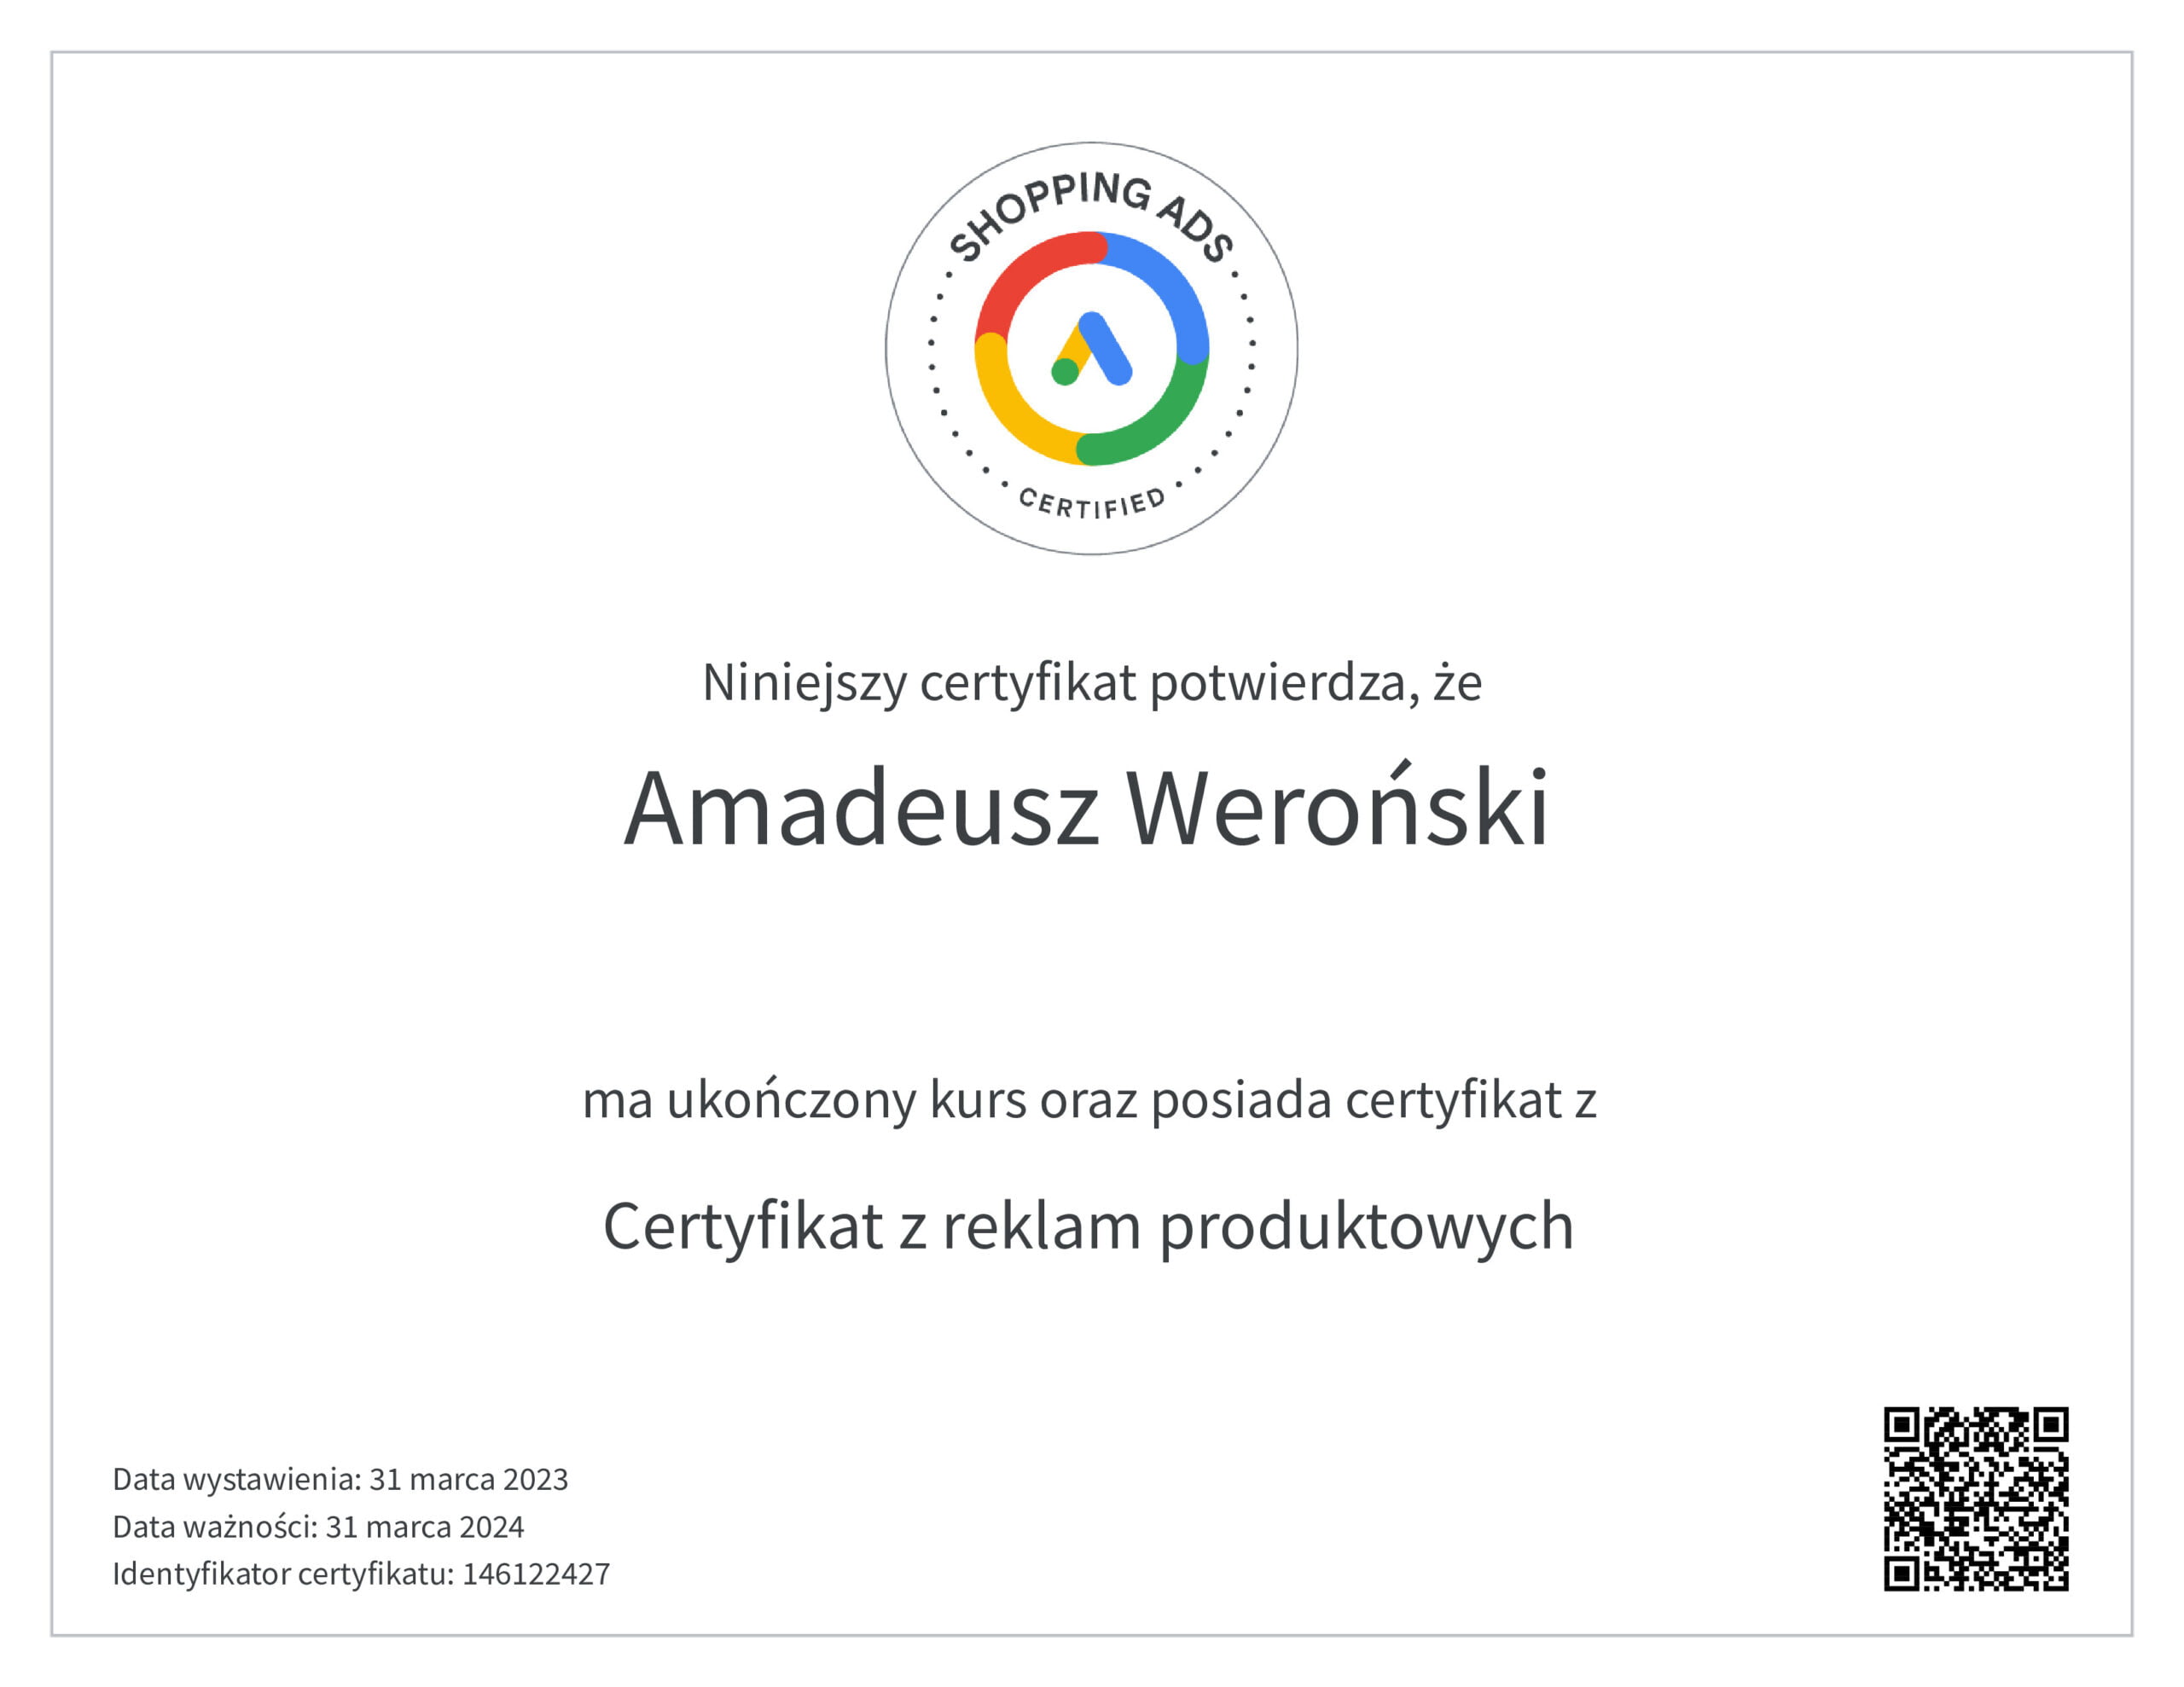 amadeusz weroński certyfikat z reklam produktowych